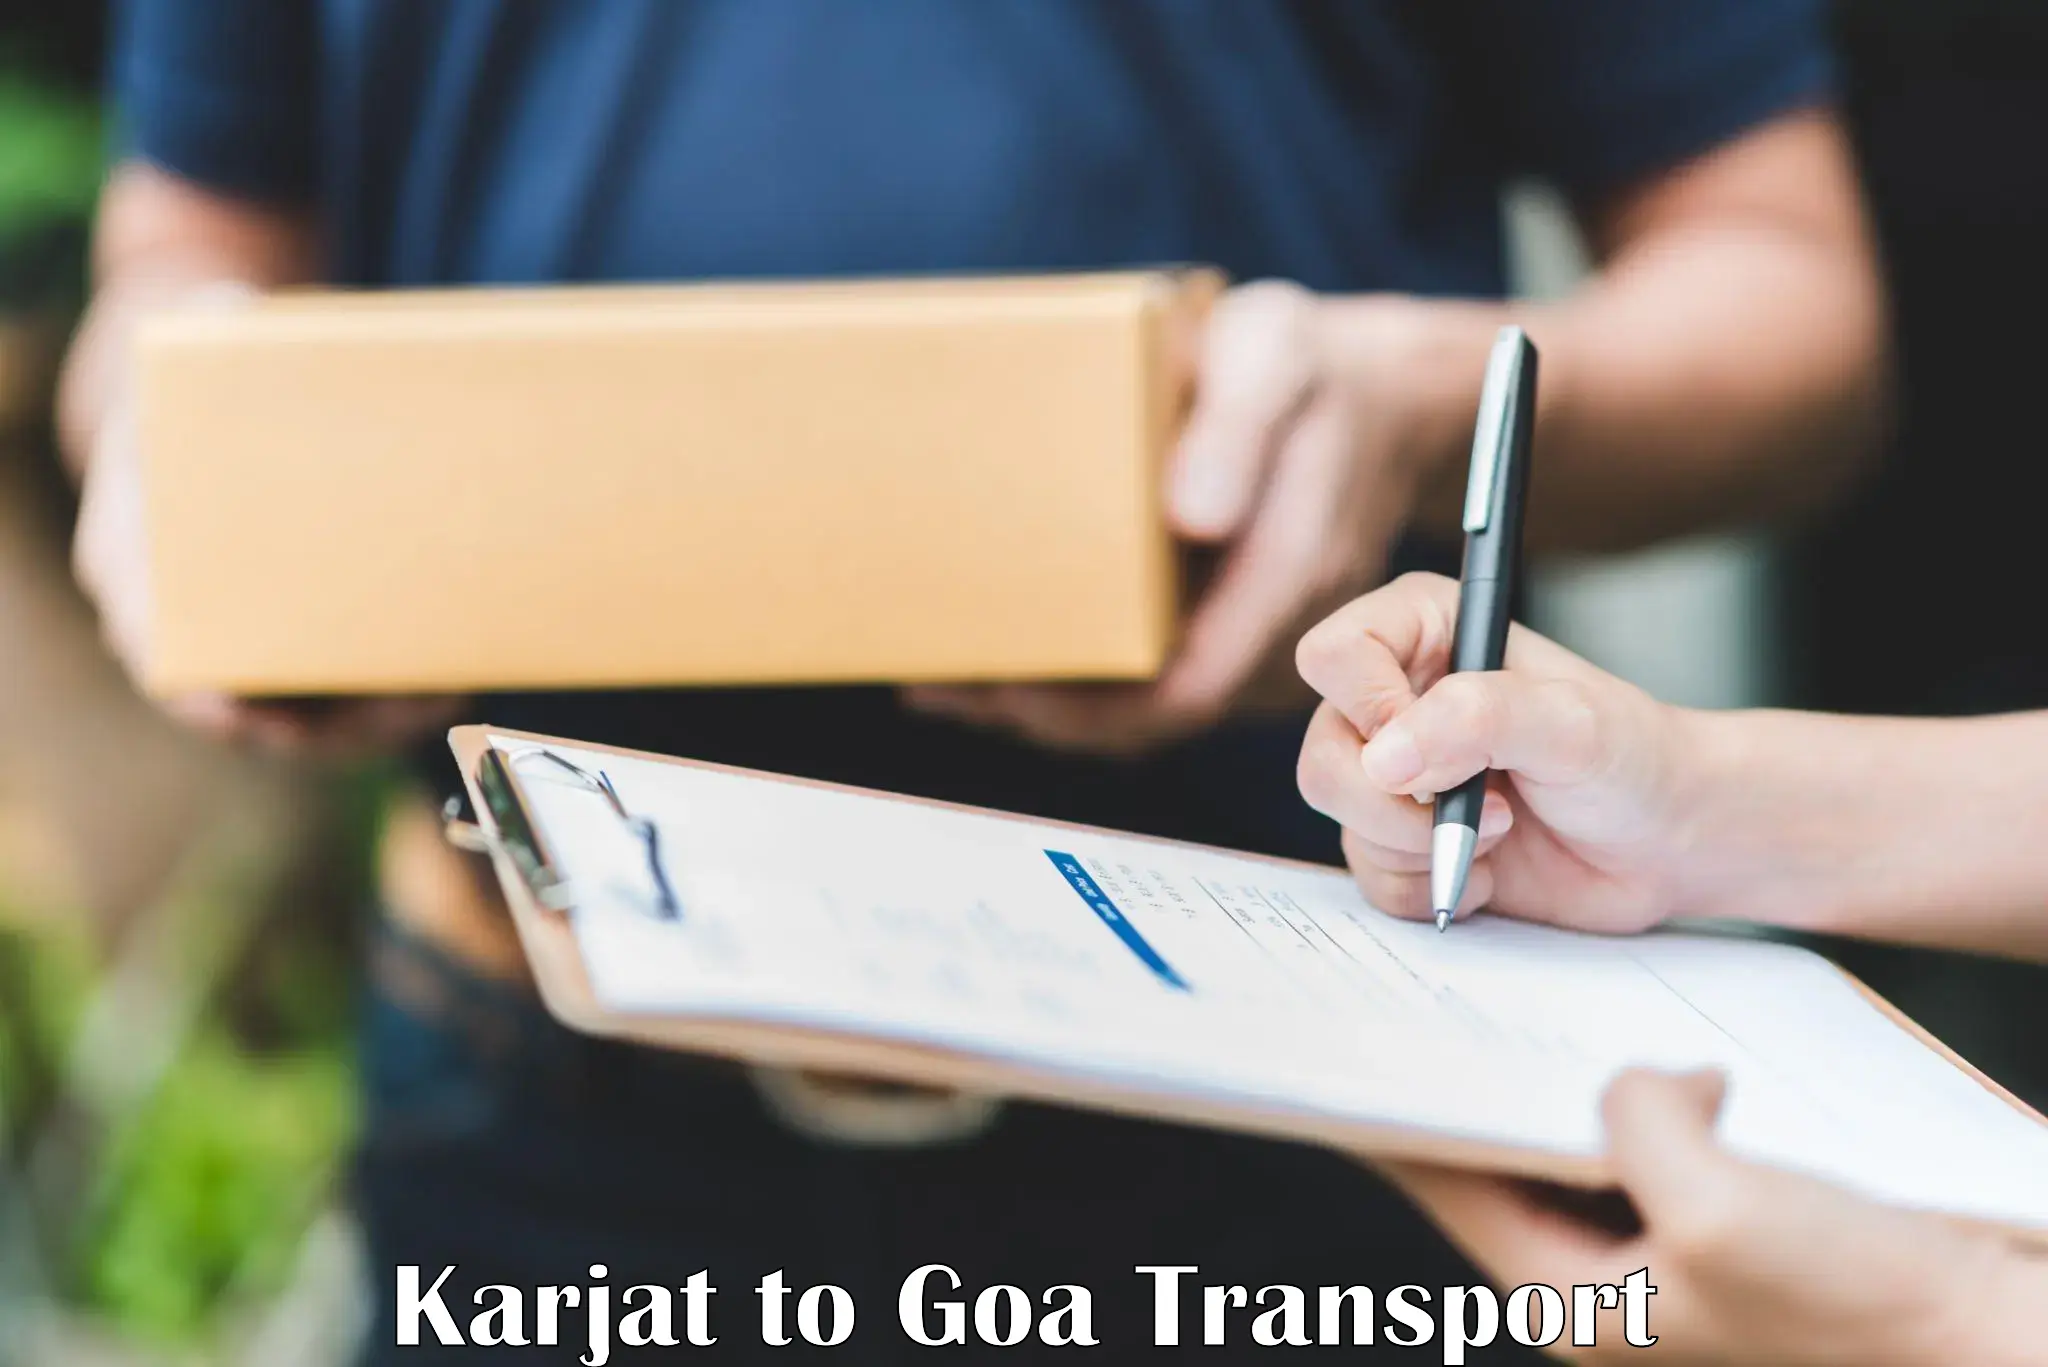 Truck transport companies in India Karjat to Sanvordem